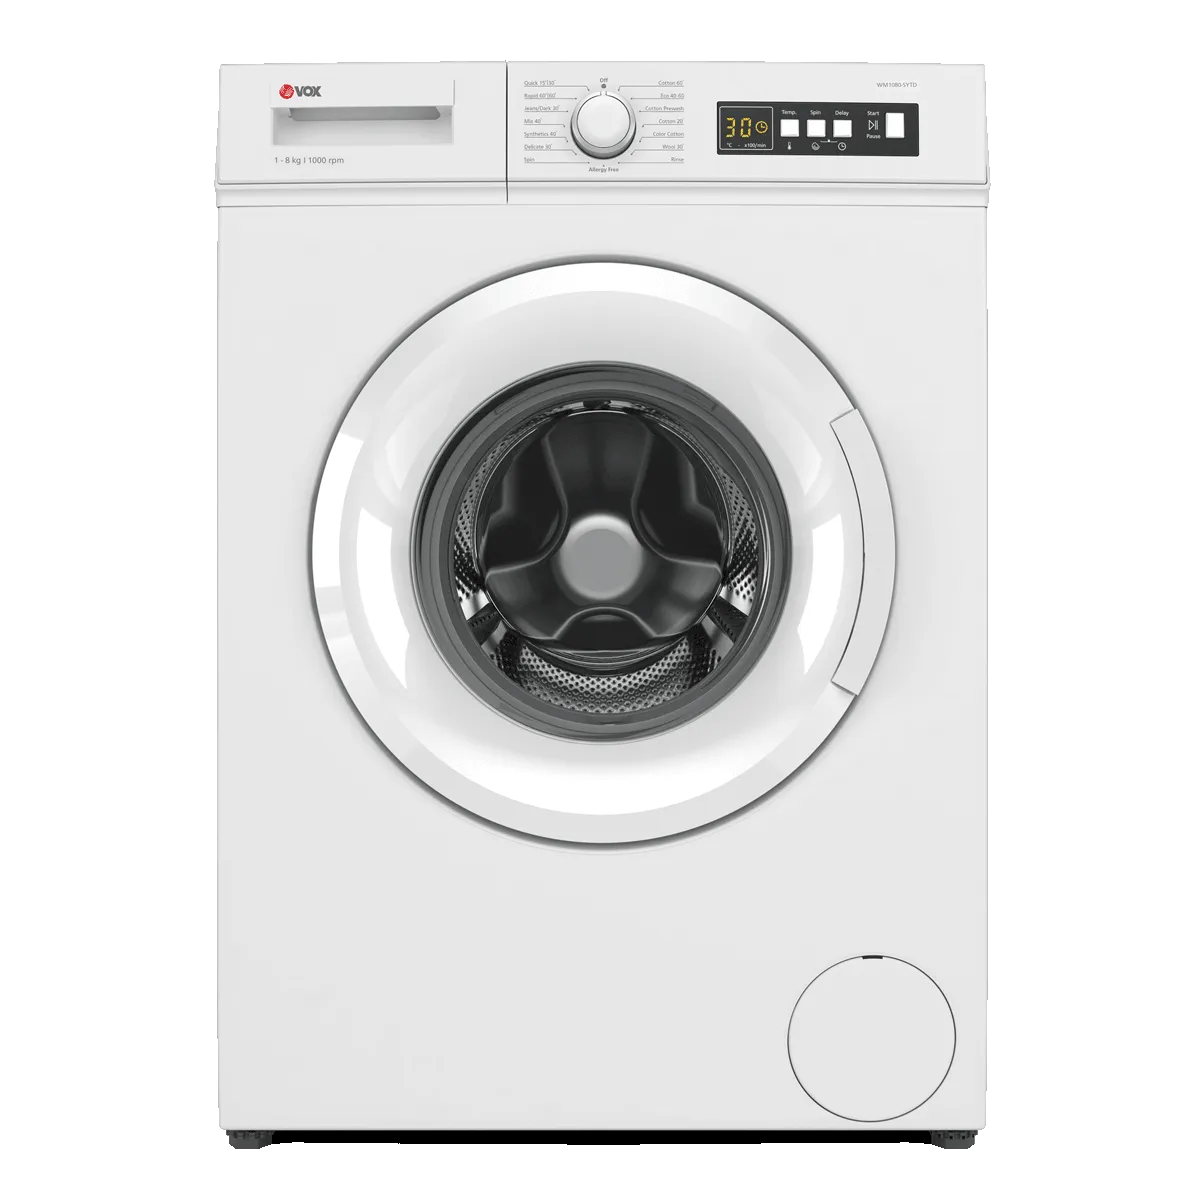 Mašina za pranje veša WM1080-SYTD 